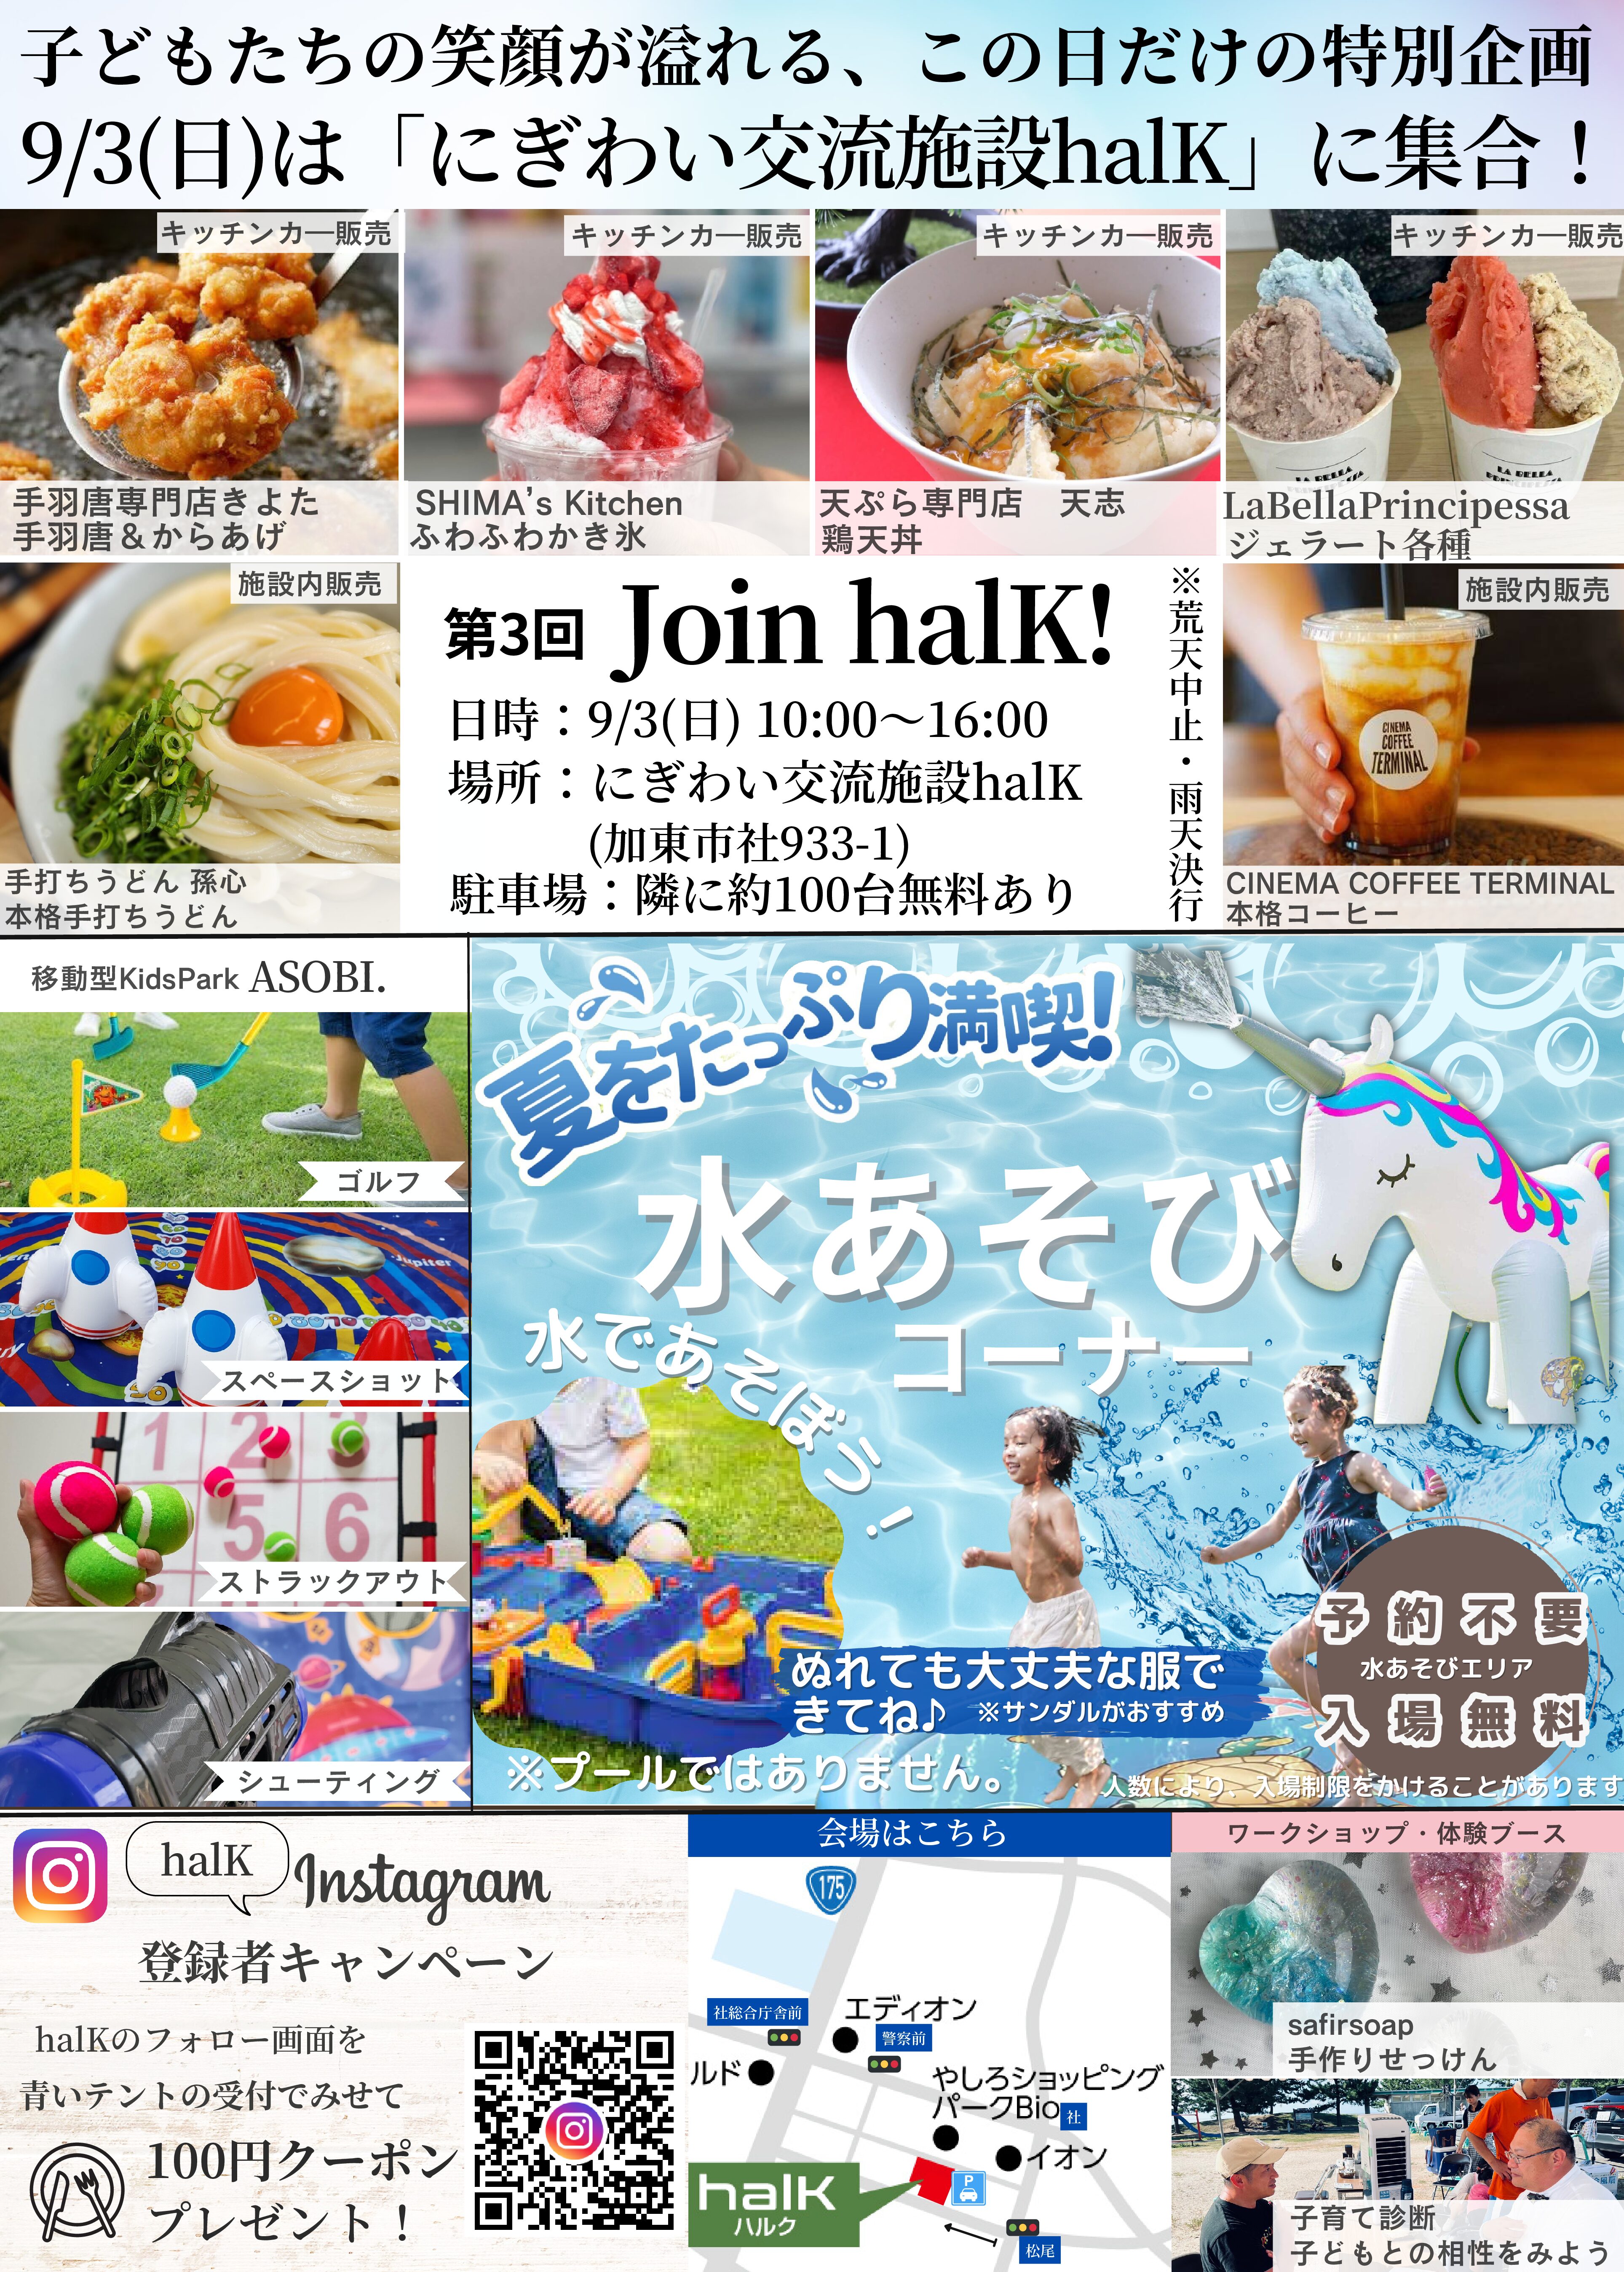 『Join halK!-in September-』